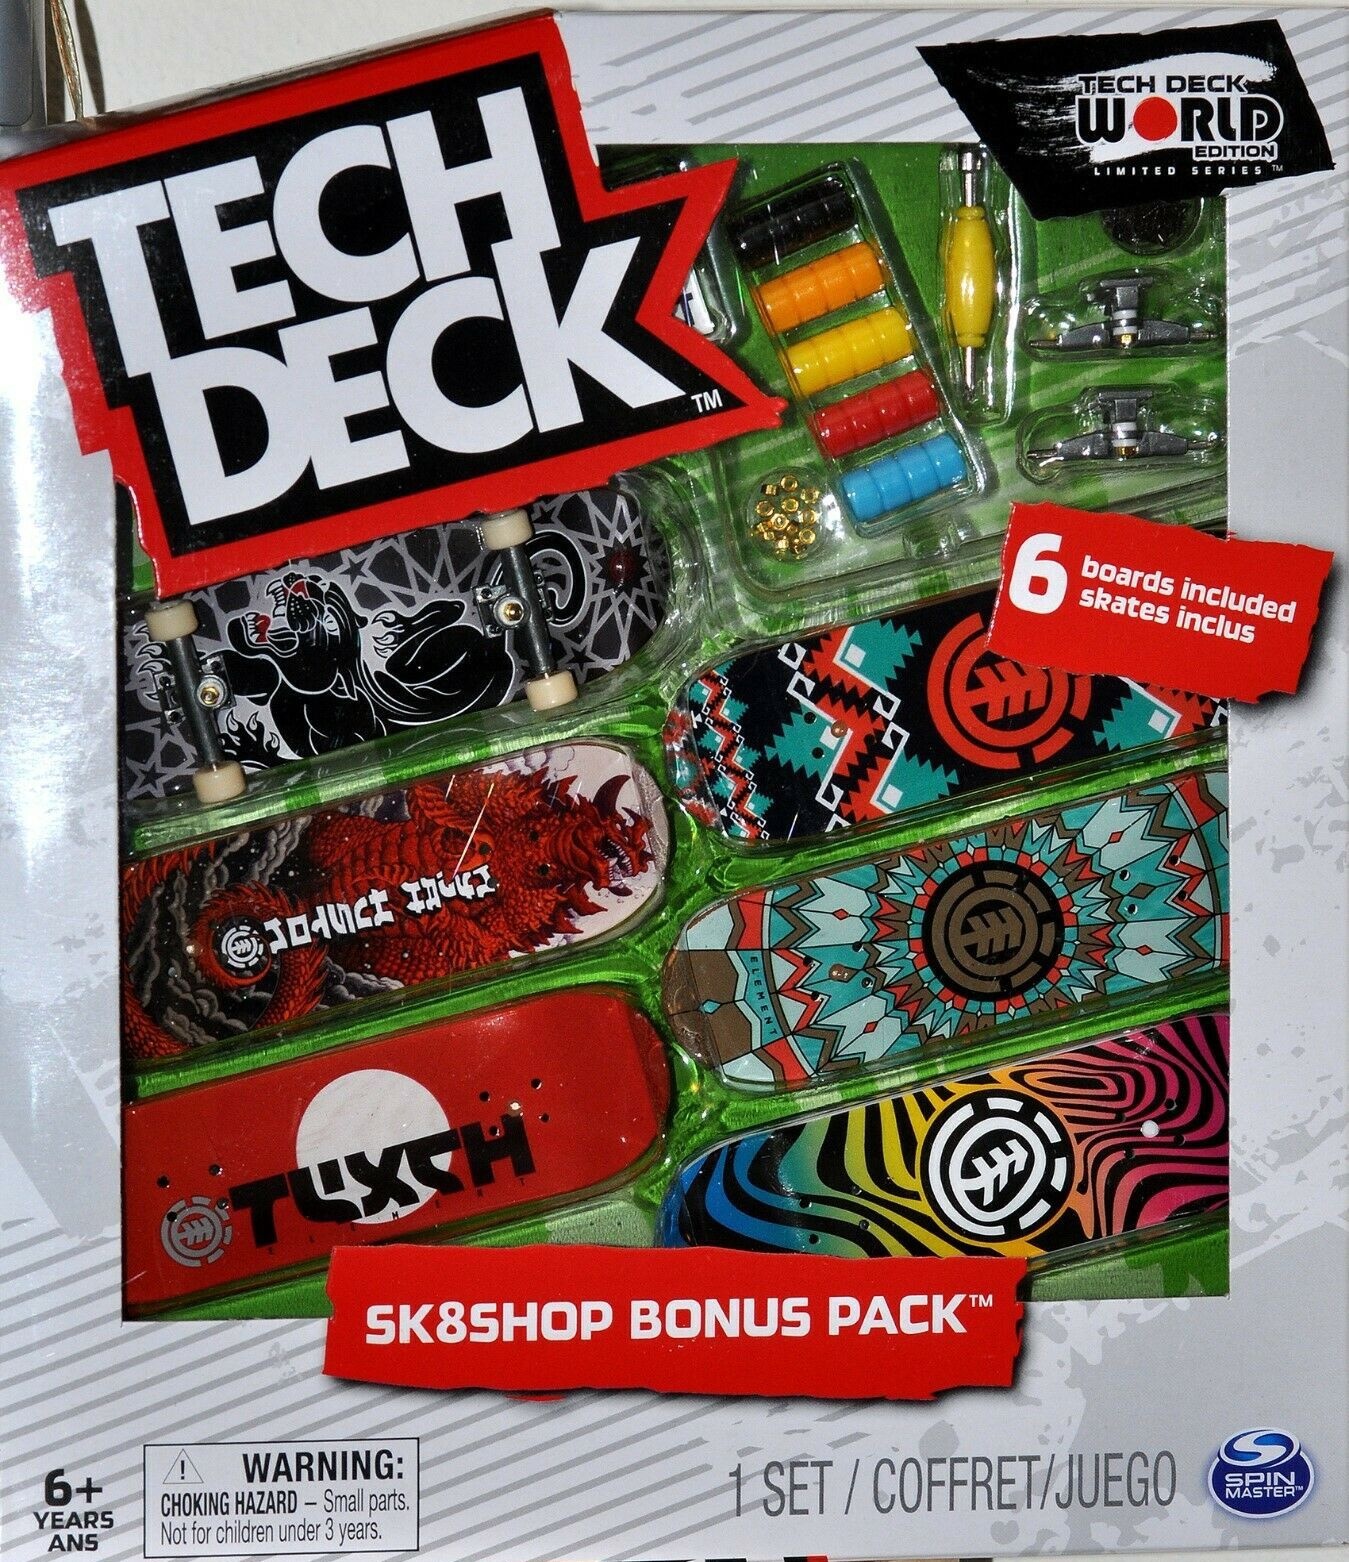 https://cdn.shoplightspeed.com/shops/605879/files/25448458/tech-deck-tech-deck-skate-shop-bonus-pack.jpg